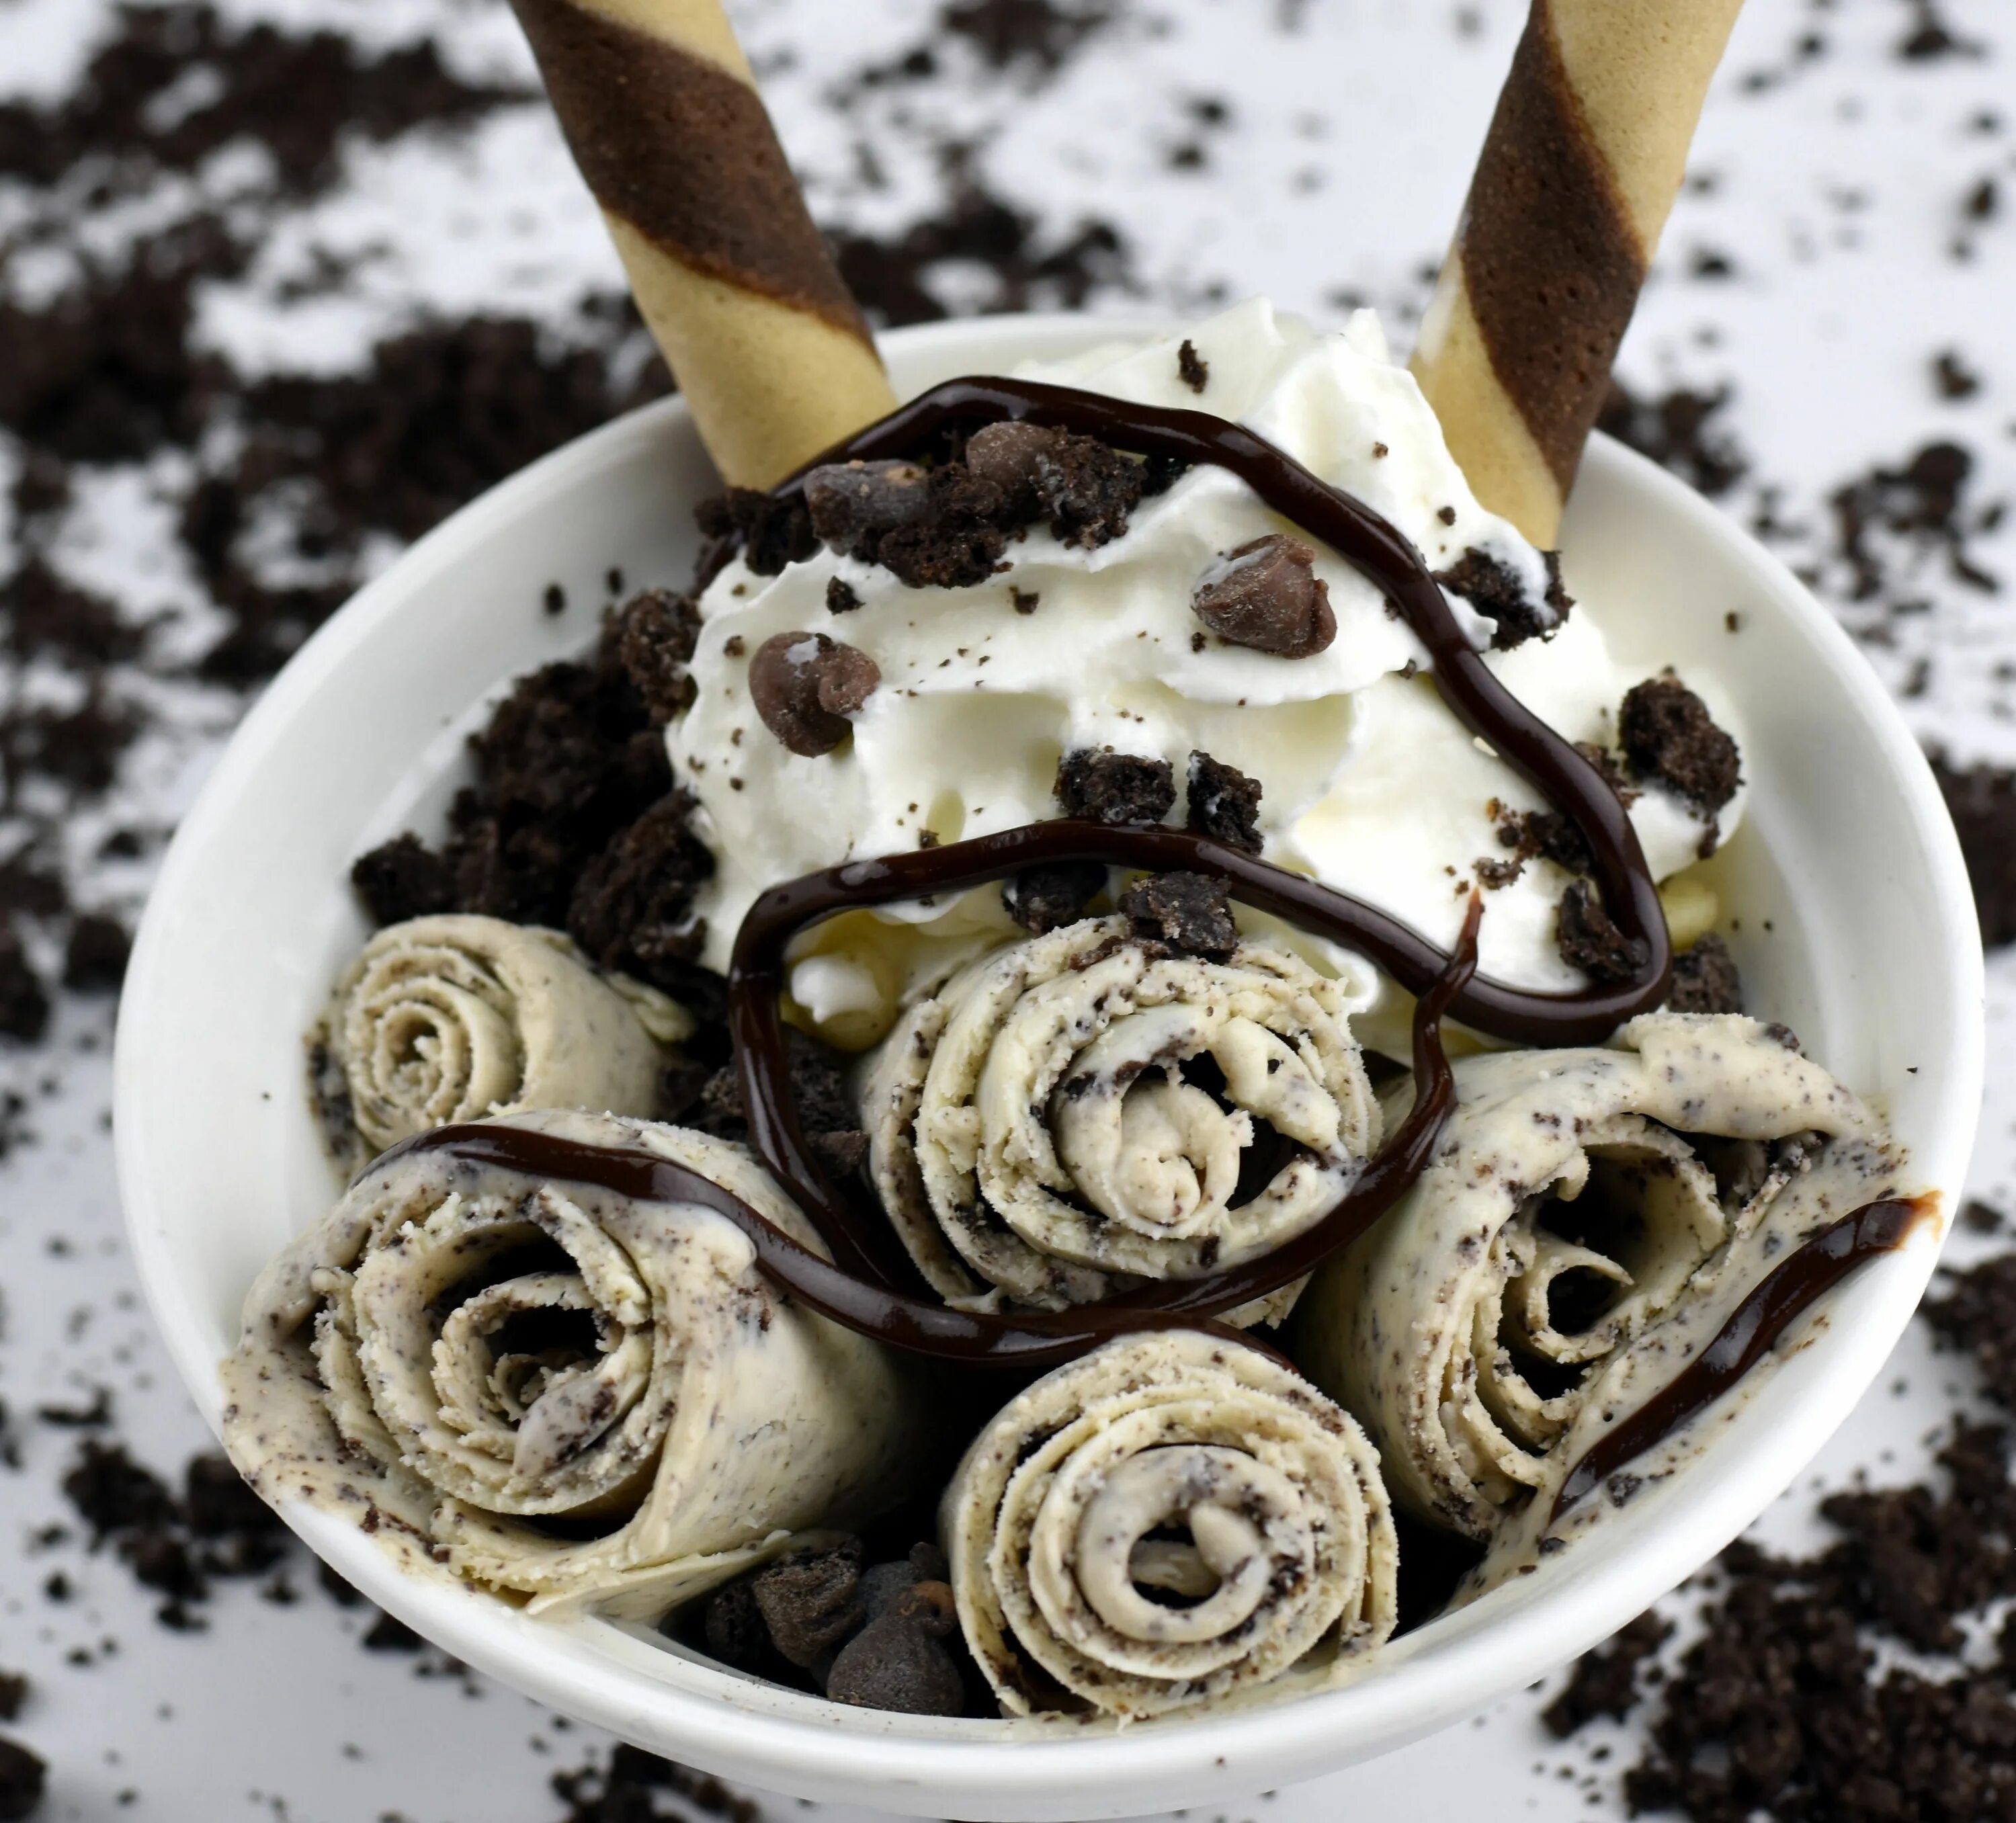 Cream rolls. Oreo Ice Cream Roll. Жареное мороженое Орео. Тайское мороженое. Ice Cream Roll тайское мороженое.